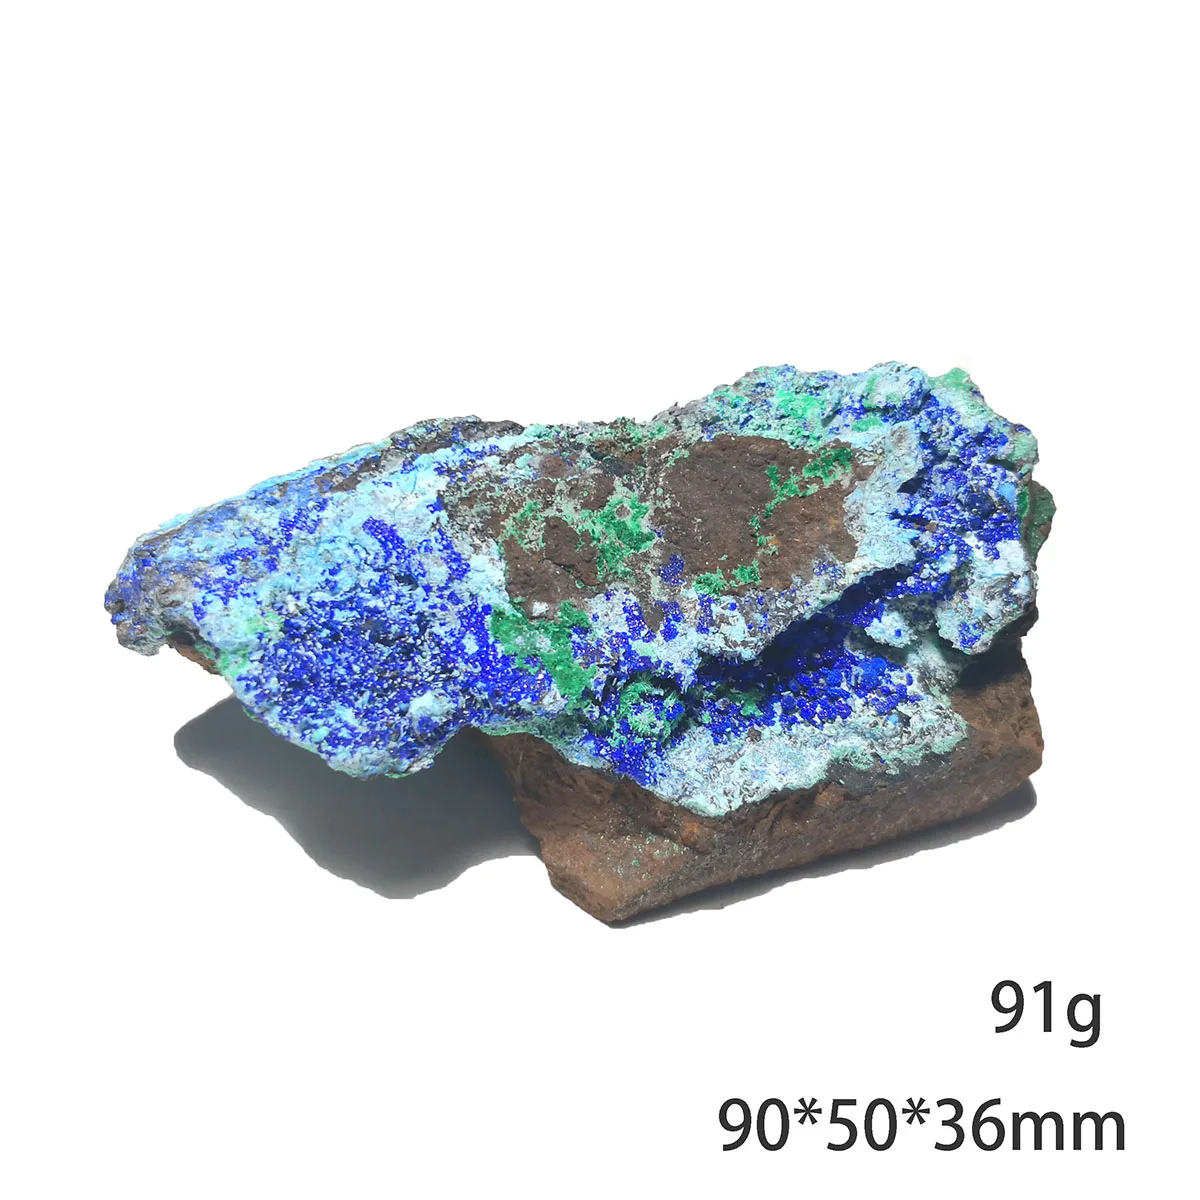 

91 г C1-3b Природный камень Gibbsite азурит Малахит минеральный кристалл образец подарок украшение из провинции Юньнань Китай